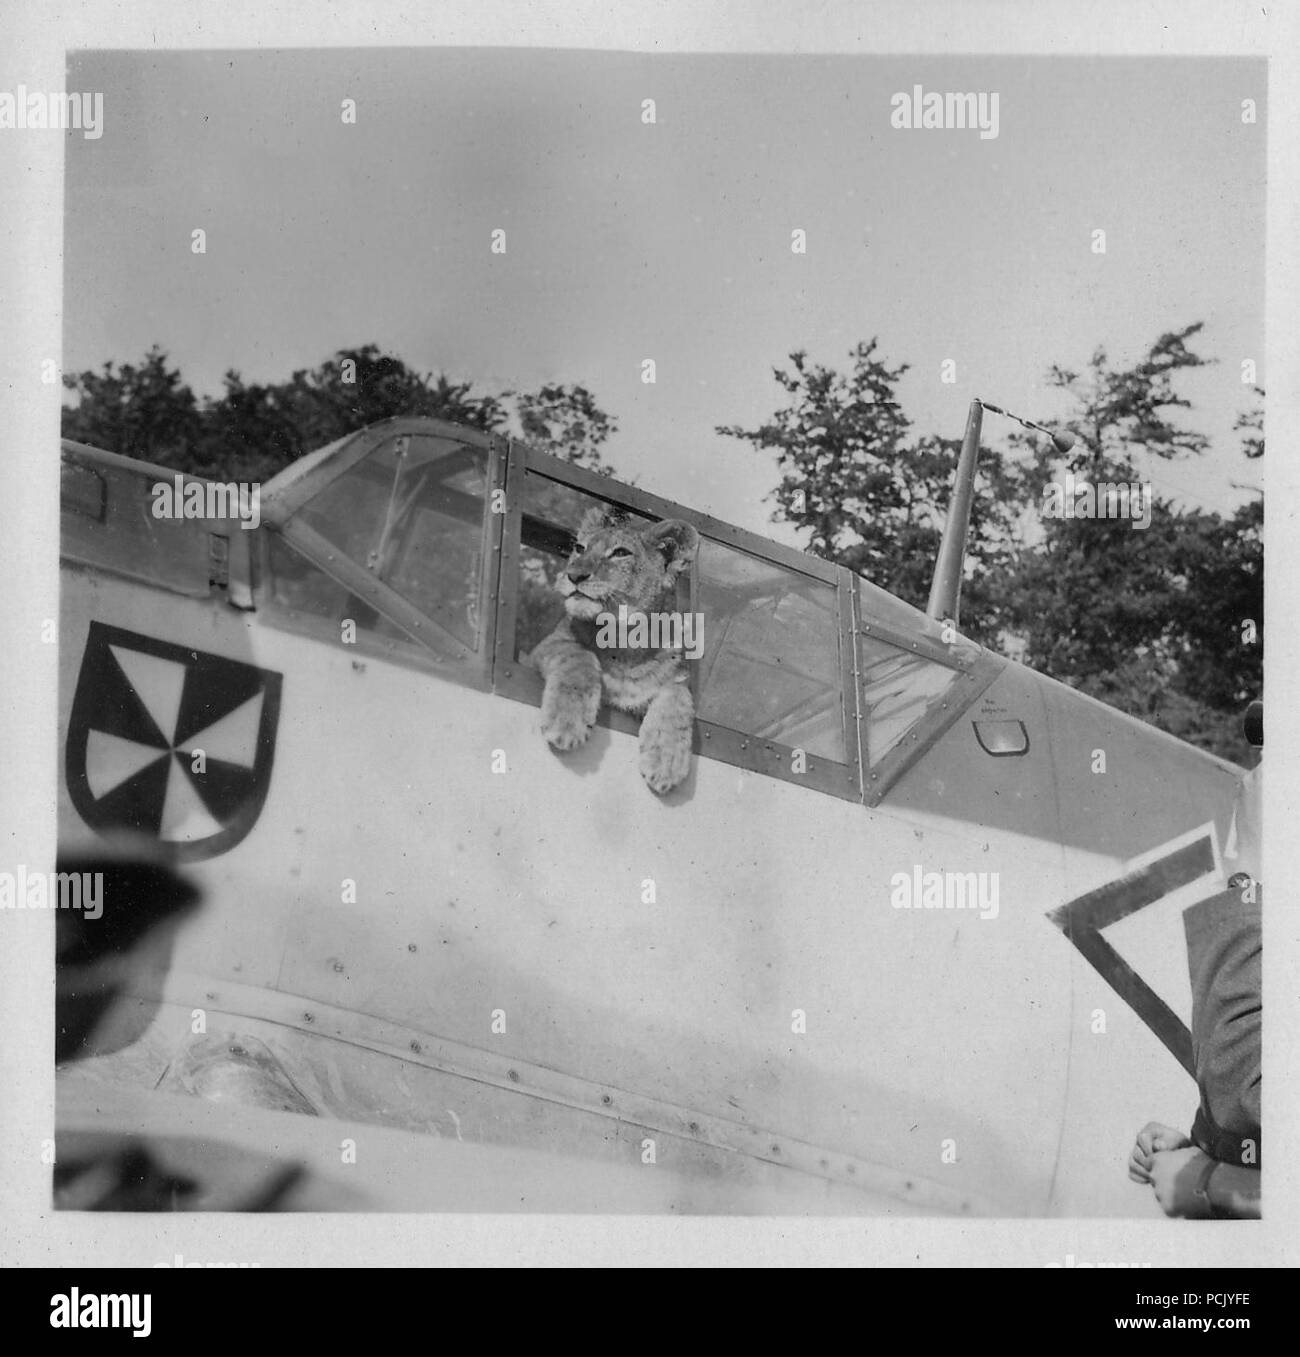 Image à partir d'un album de photos relatives à II. Gruppe, Jagdgeschwader 3 : 'Simba', le lion cub mascotte de II. Gruppe, Jagdgeschwader 3, pose dans le cockpit de l'Messerschmitt Bf 109E de l'oberleutnant Franz von Werra (capitaine-adjudant de II./JG 3). Le Gruppe insigne est clairement visible sur le fuselage de l'avion, juste à l'avant du cockpit. Banque D'Images